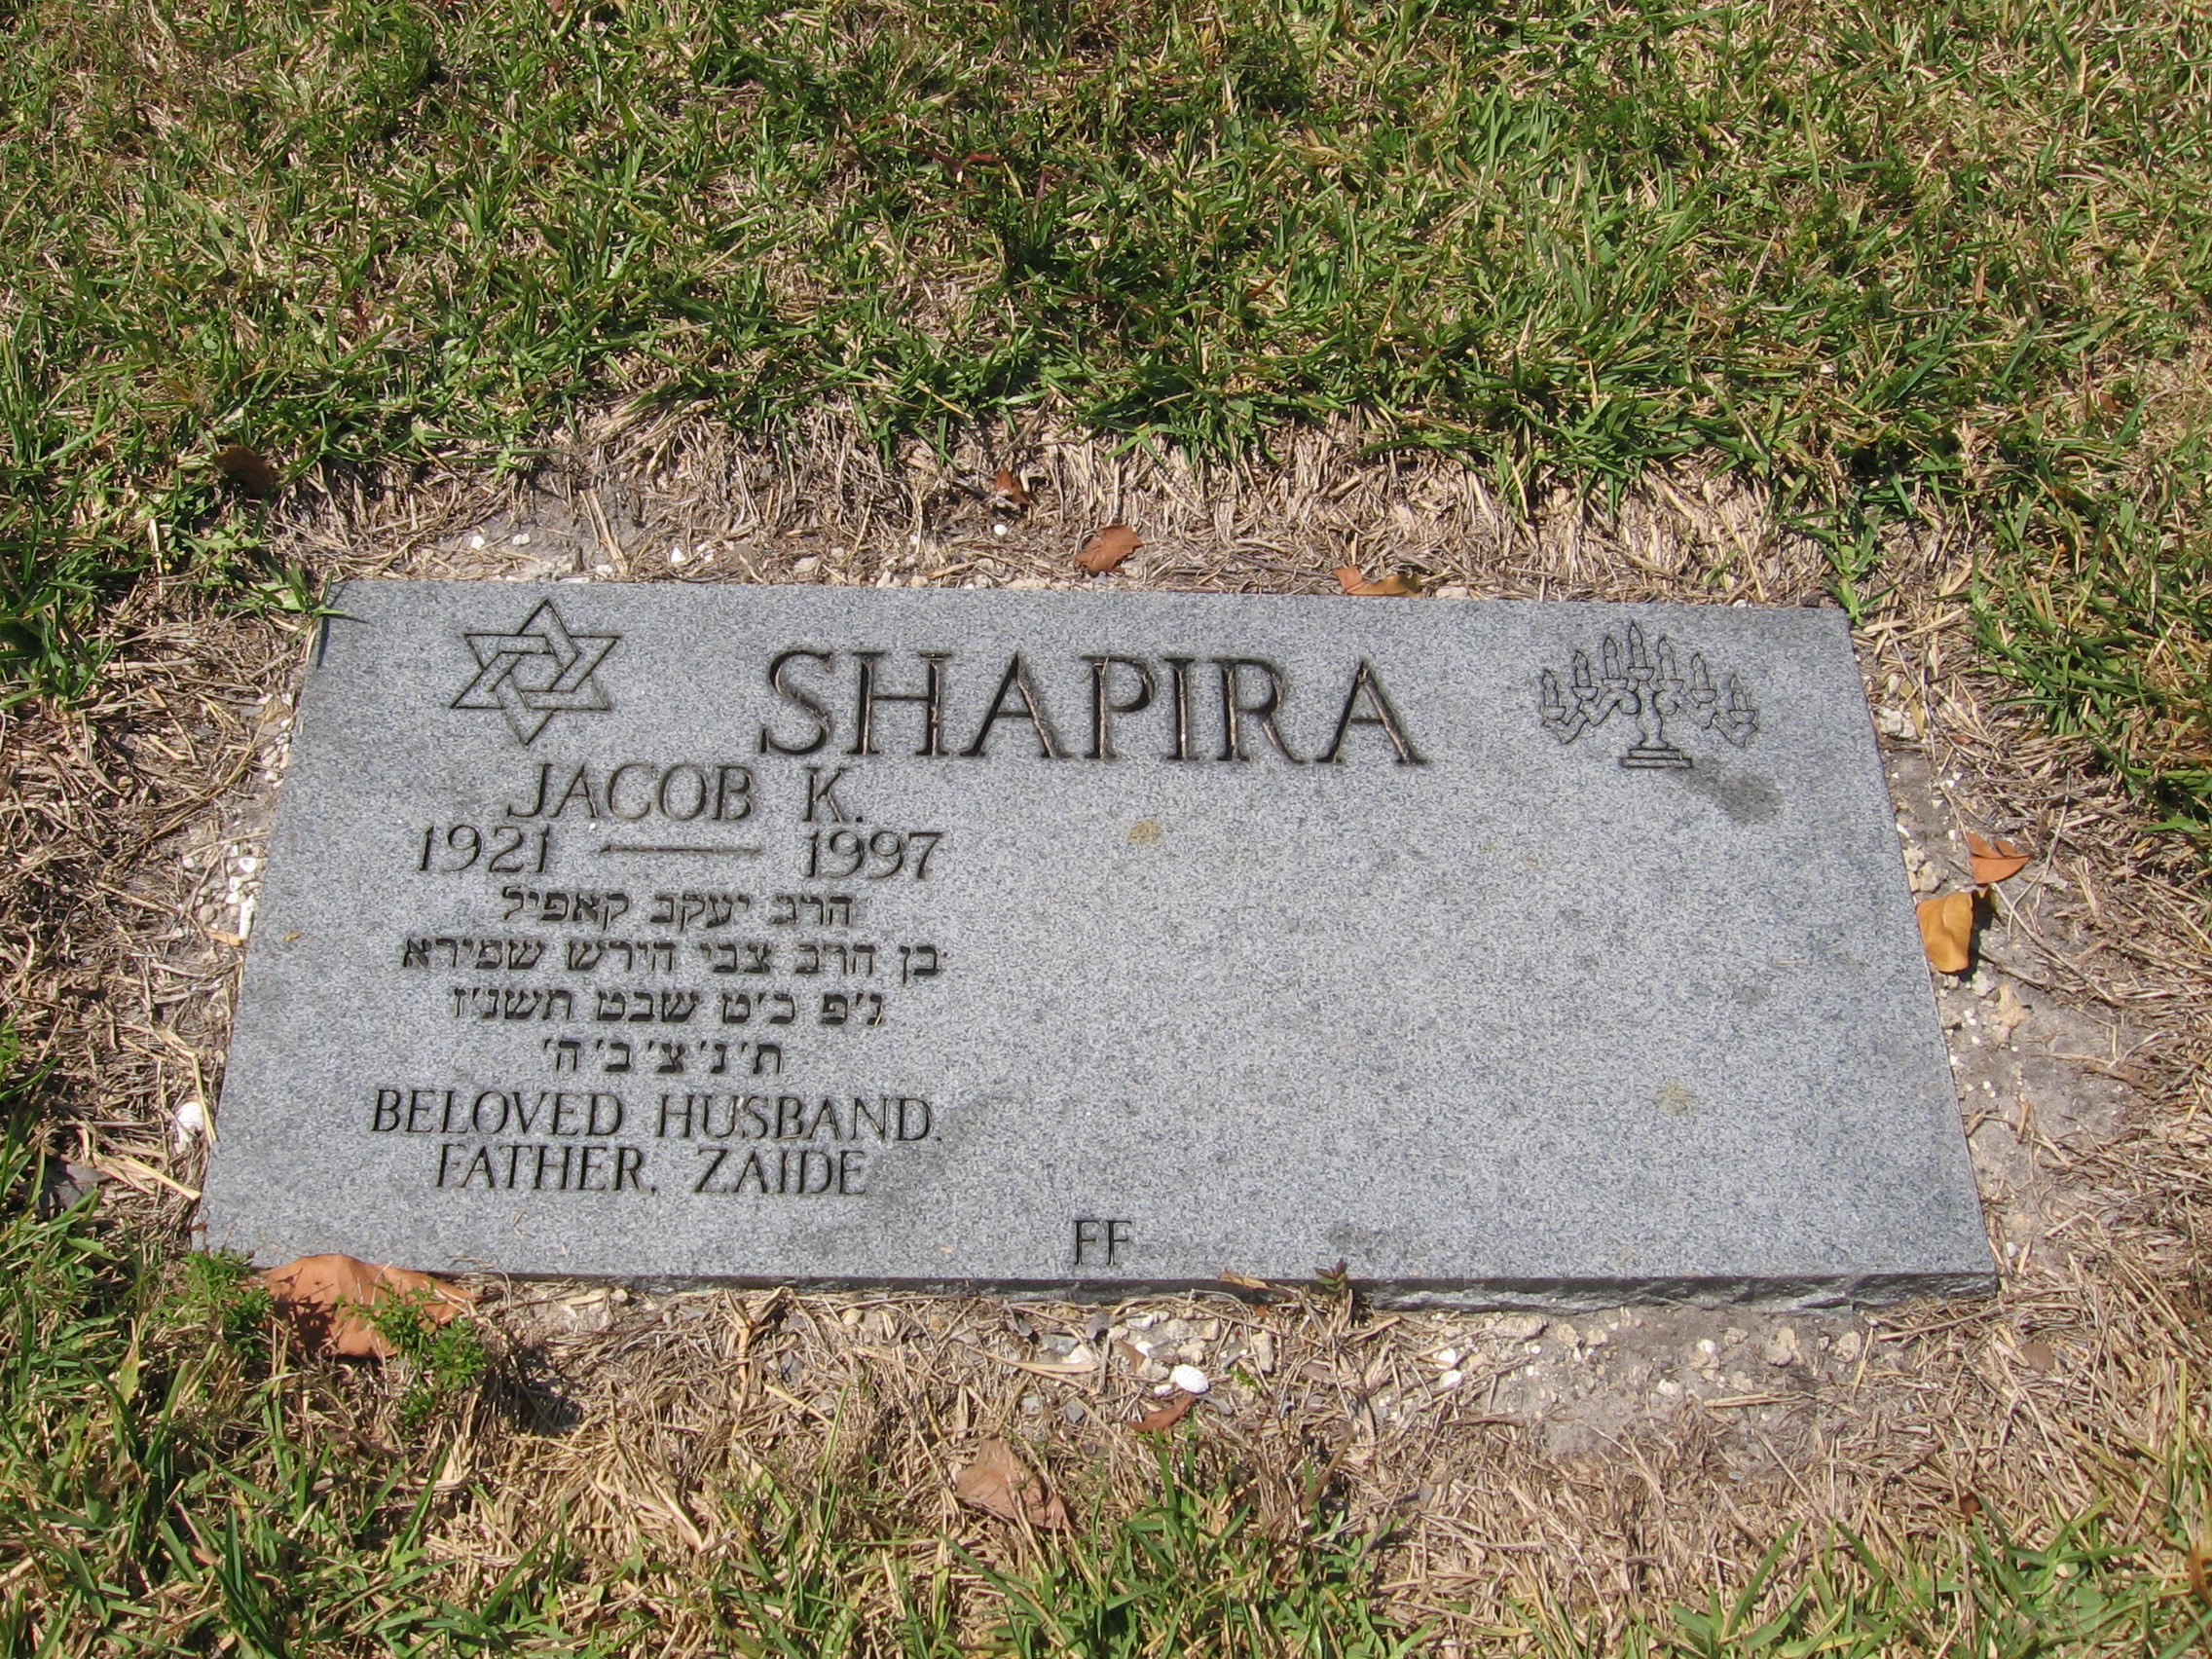 Jacob K Shapira